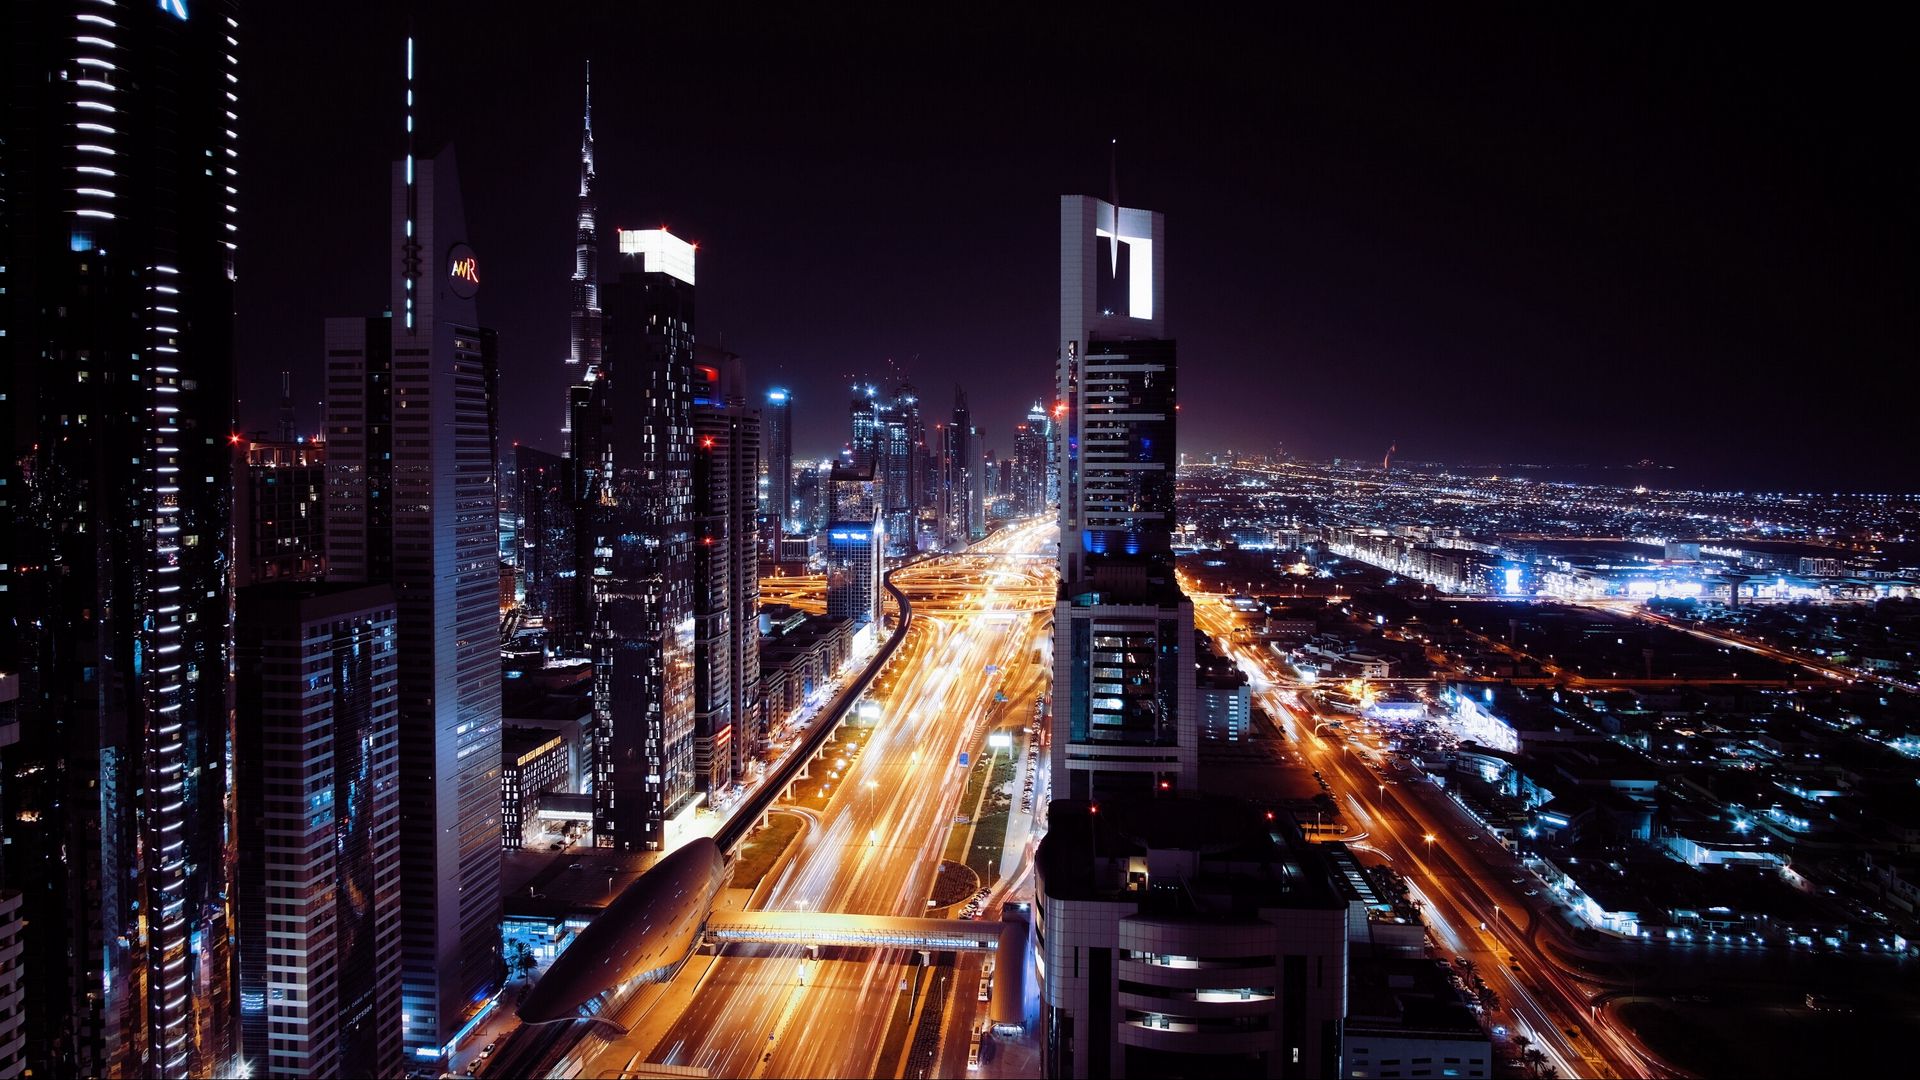 Burj Khalifa Dubai City  Free photo on Pixabay  Pixabay